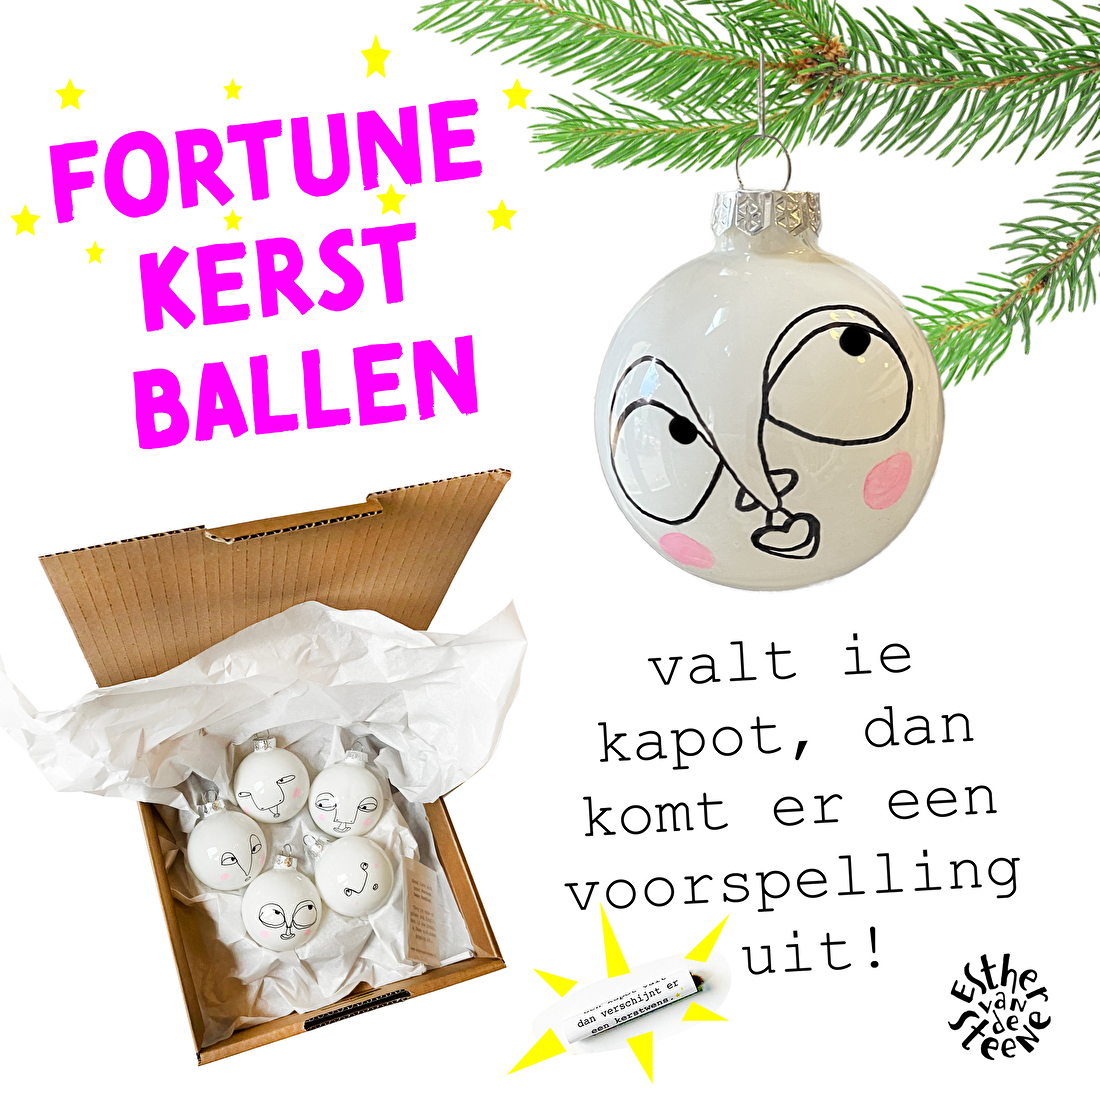 Fortune kerstballen, met een voorspelling voor jouw nieuwe jaar erin.